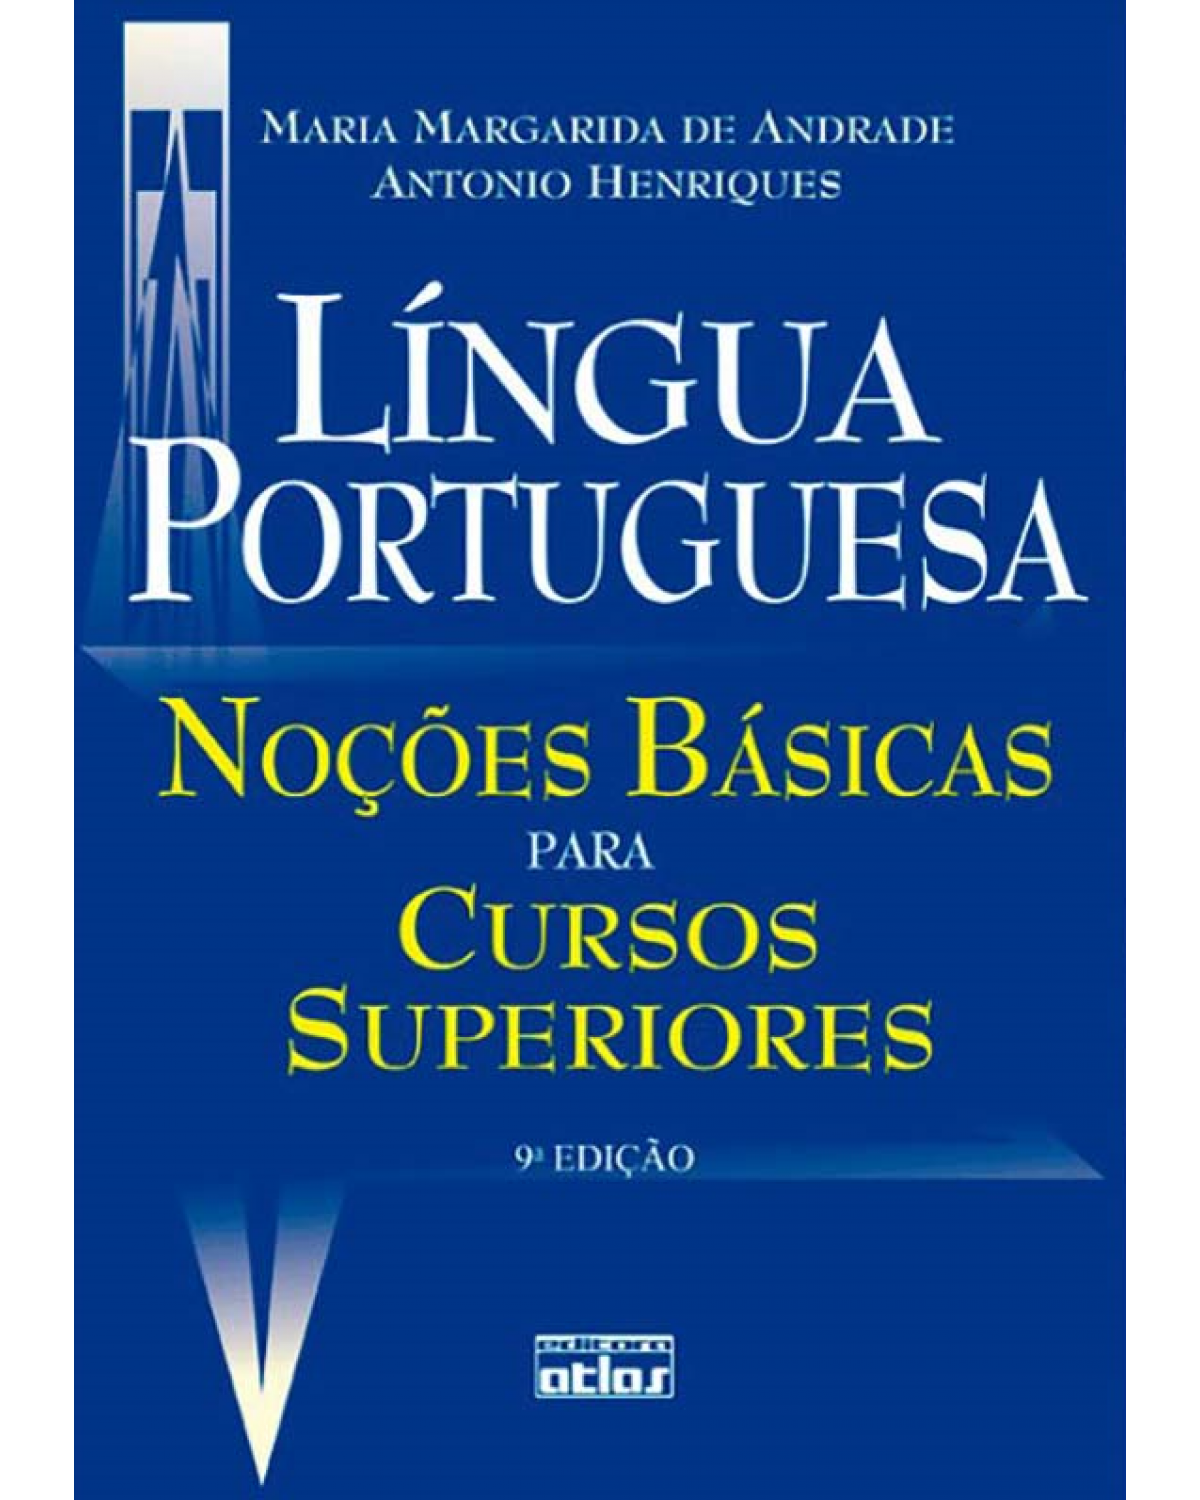 Língua portuguesa - Noções básicas para cursos superiores - 9ª Edição | 2010